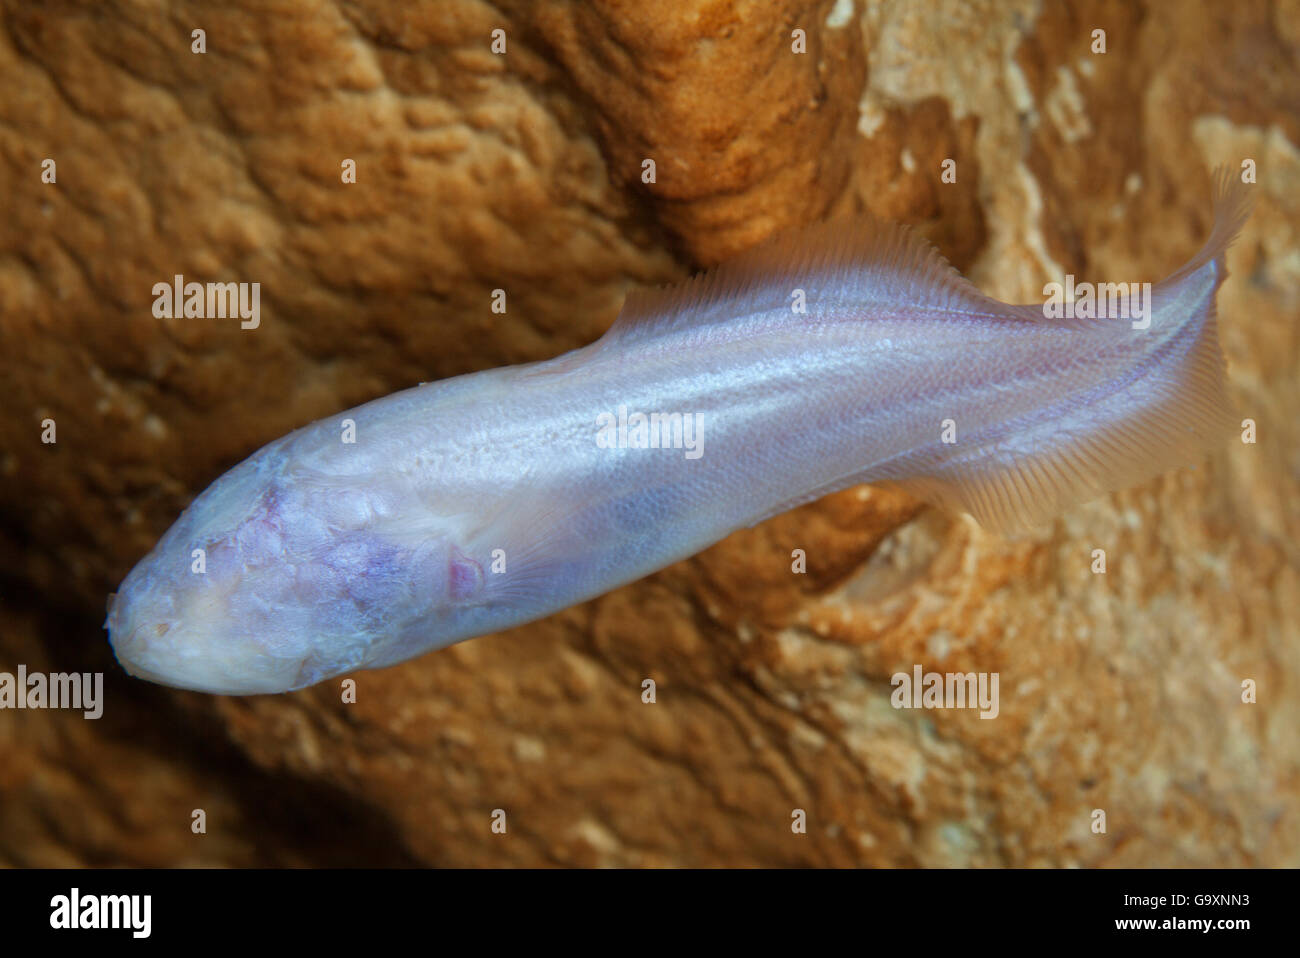 Aveugles (Typhliasina brotula mexicain pearsei) un blind cave fish, gouffre près de Tulum, péninsule du Yucatan, au Mexique, en août. Endangere Banque D'Images